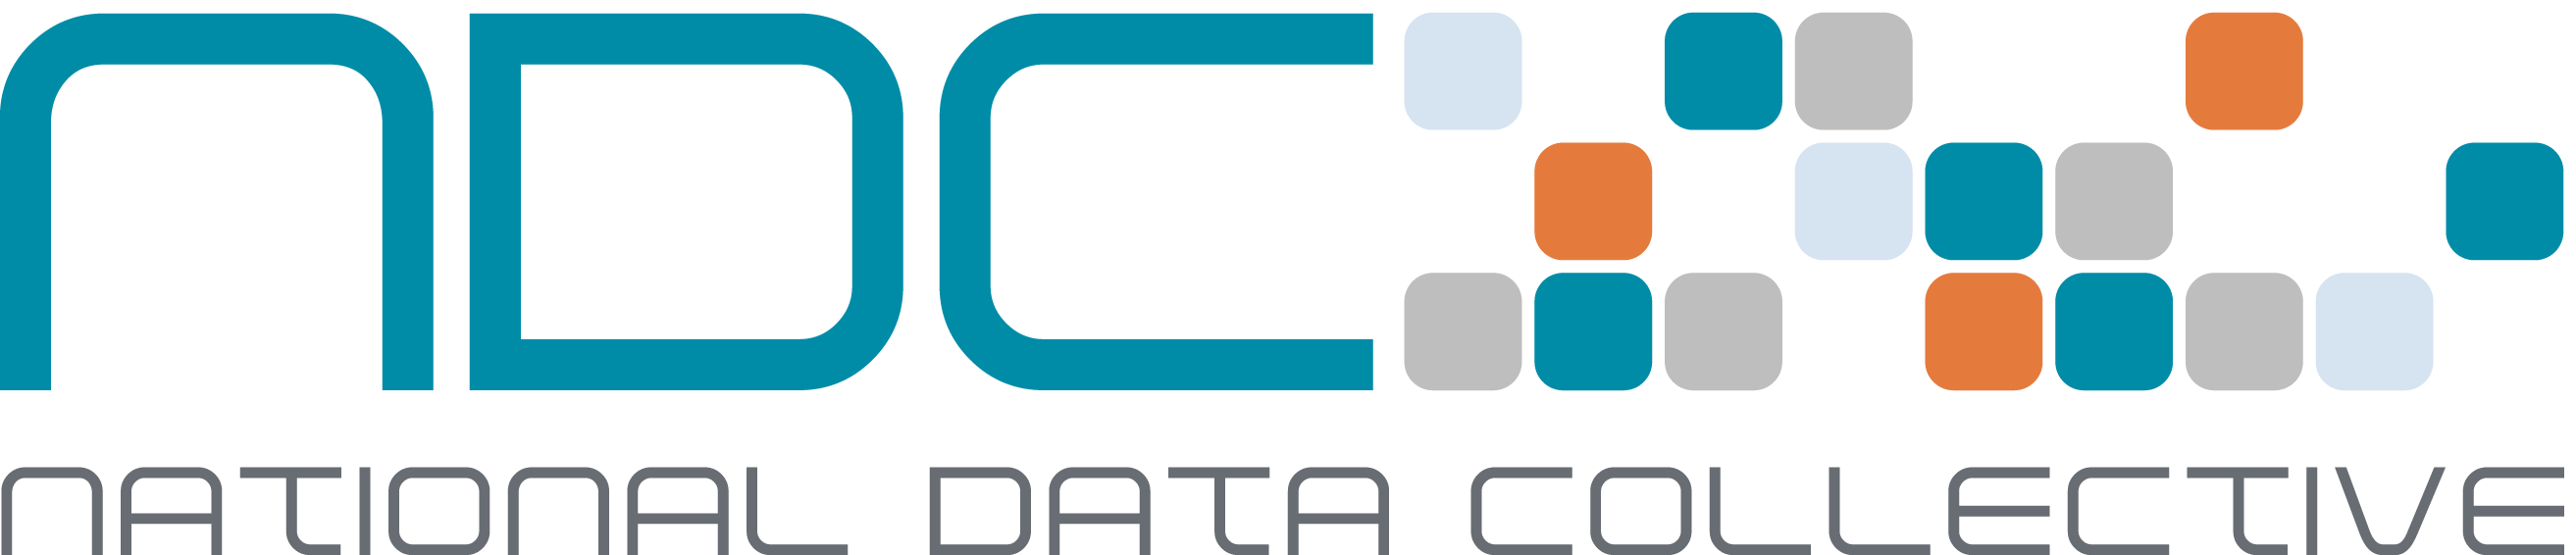 ndcdata Logo